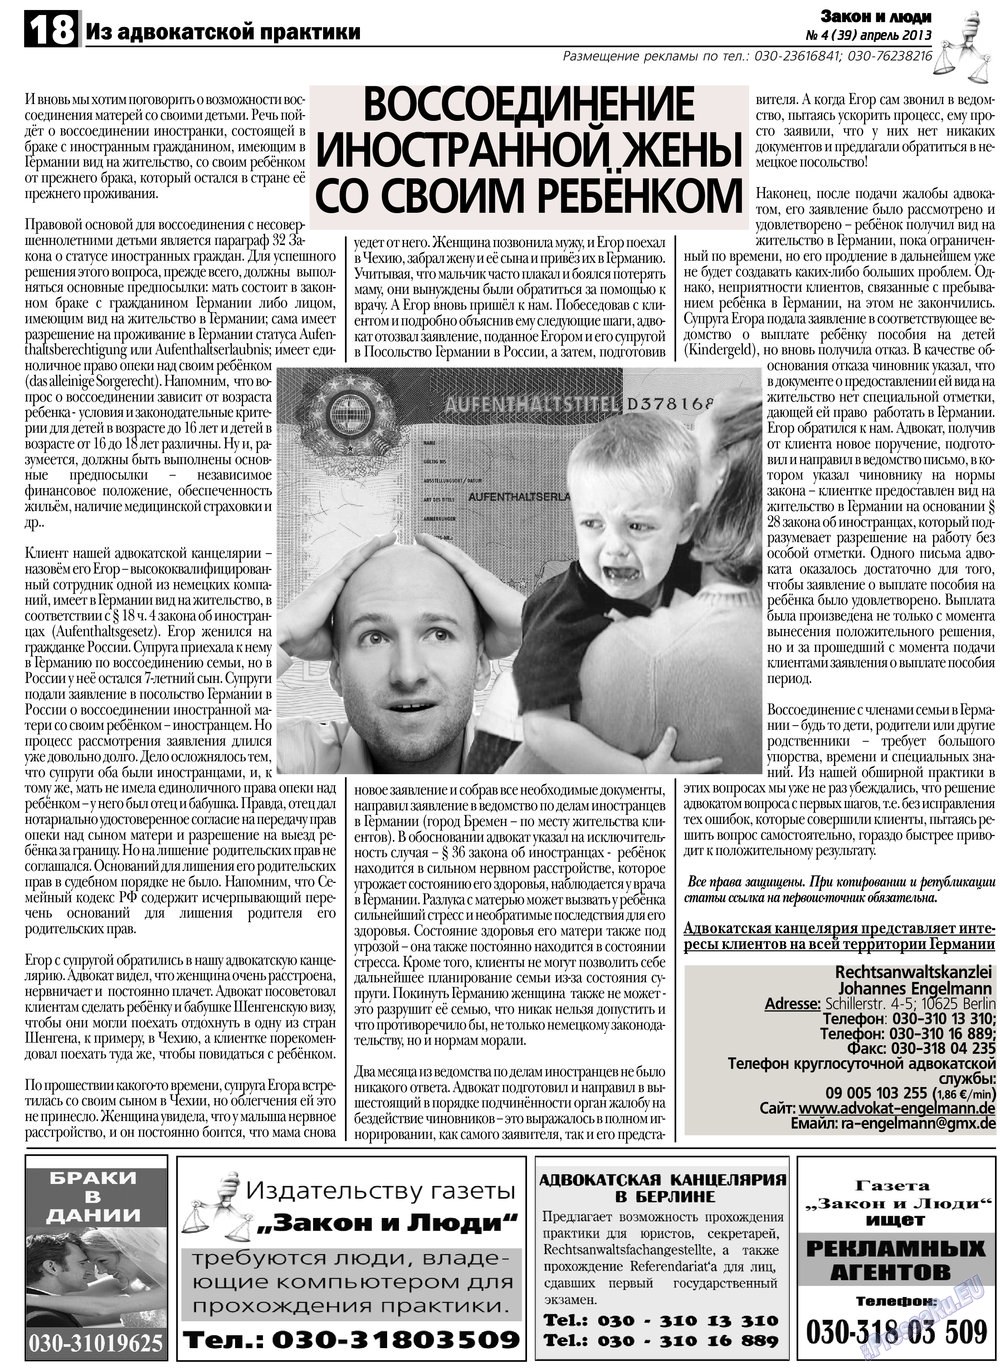 Закон и люди, газета. 2013 №4 стр.18